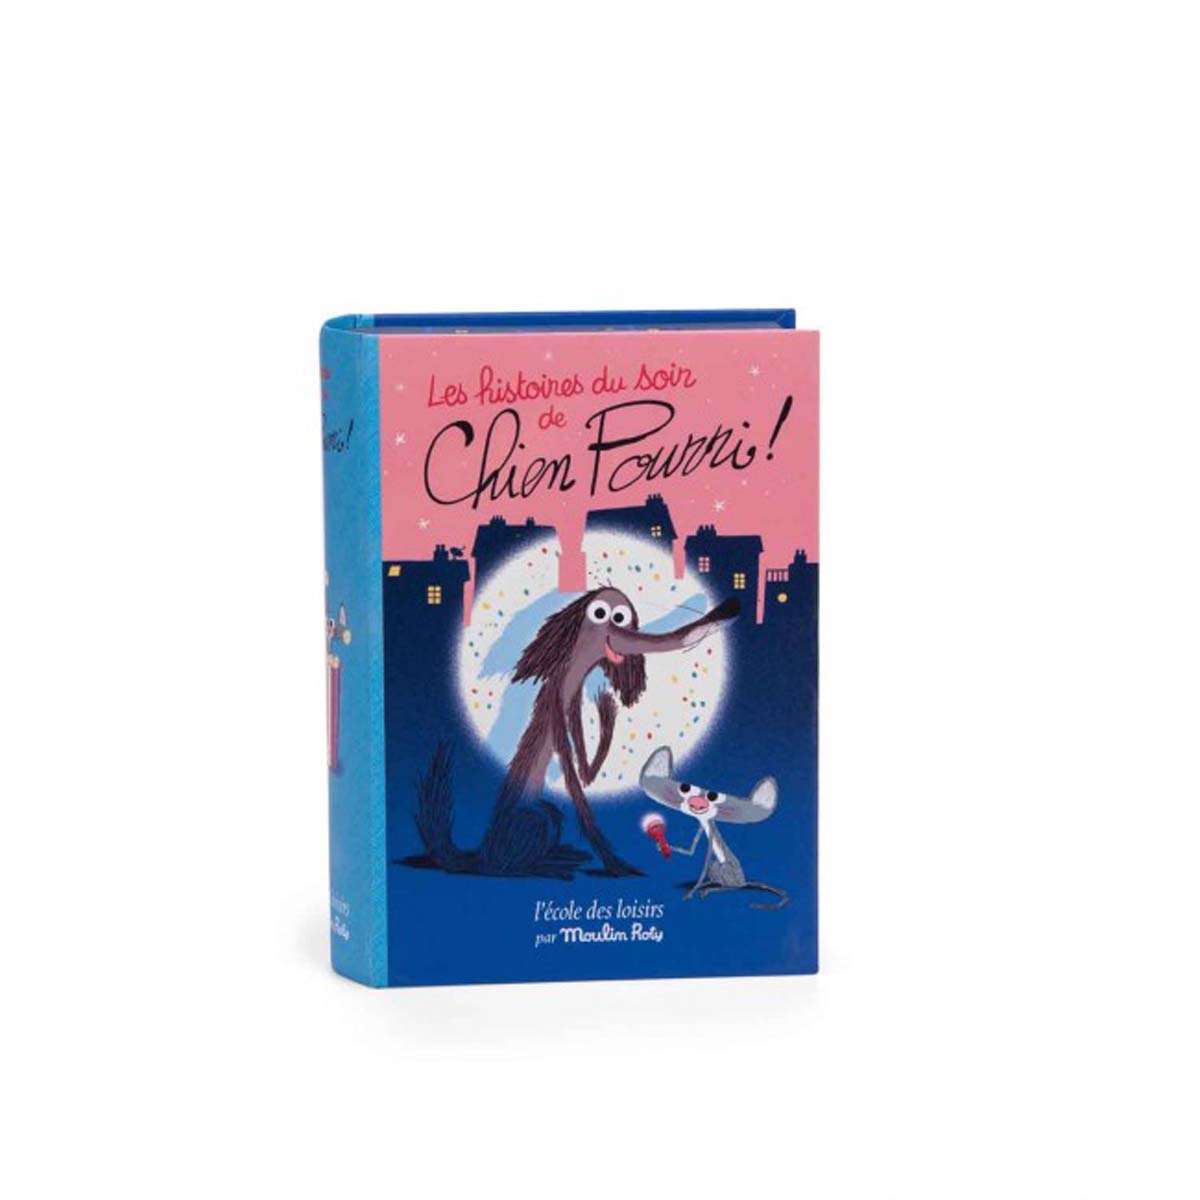 De magische verhaaltjeslamp boek stinkhond van Moulin Roty projecteert vijf verhaaltjes zonder woorden op het schutblad van het boek. Bedenk je eigen verhaal met geïllustreerde ansichtkaarten. Vanaf 3 jaar. VanZus